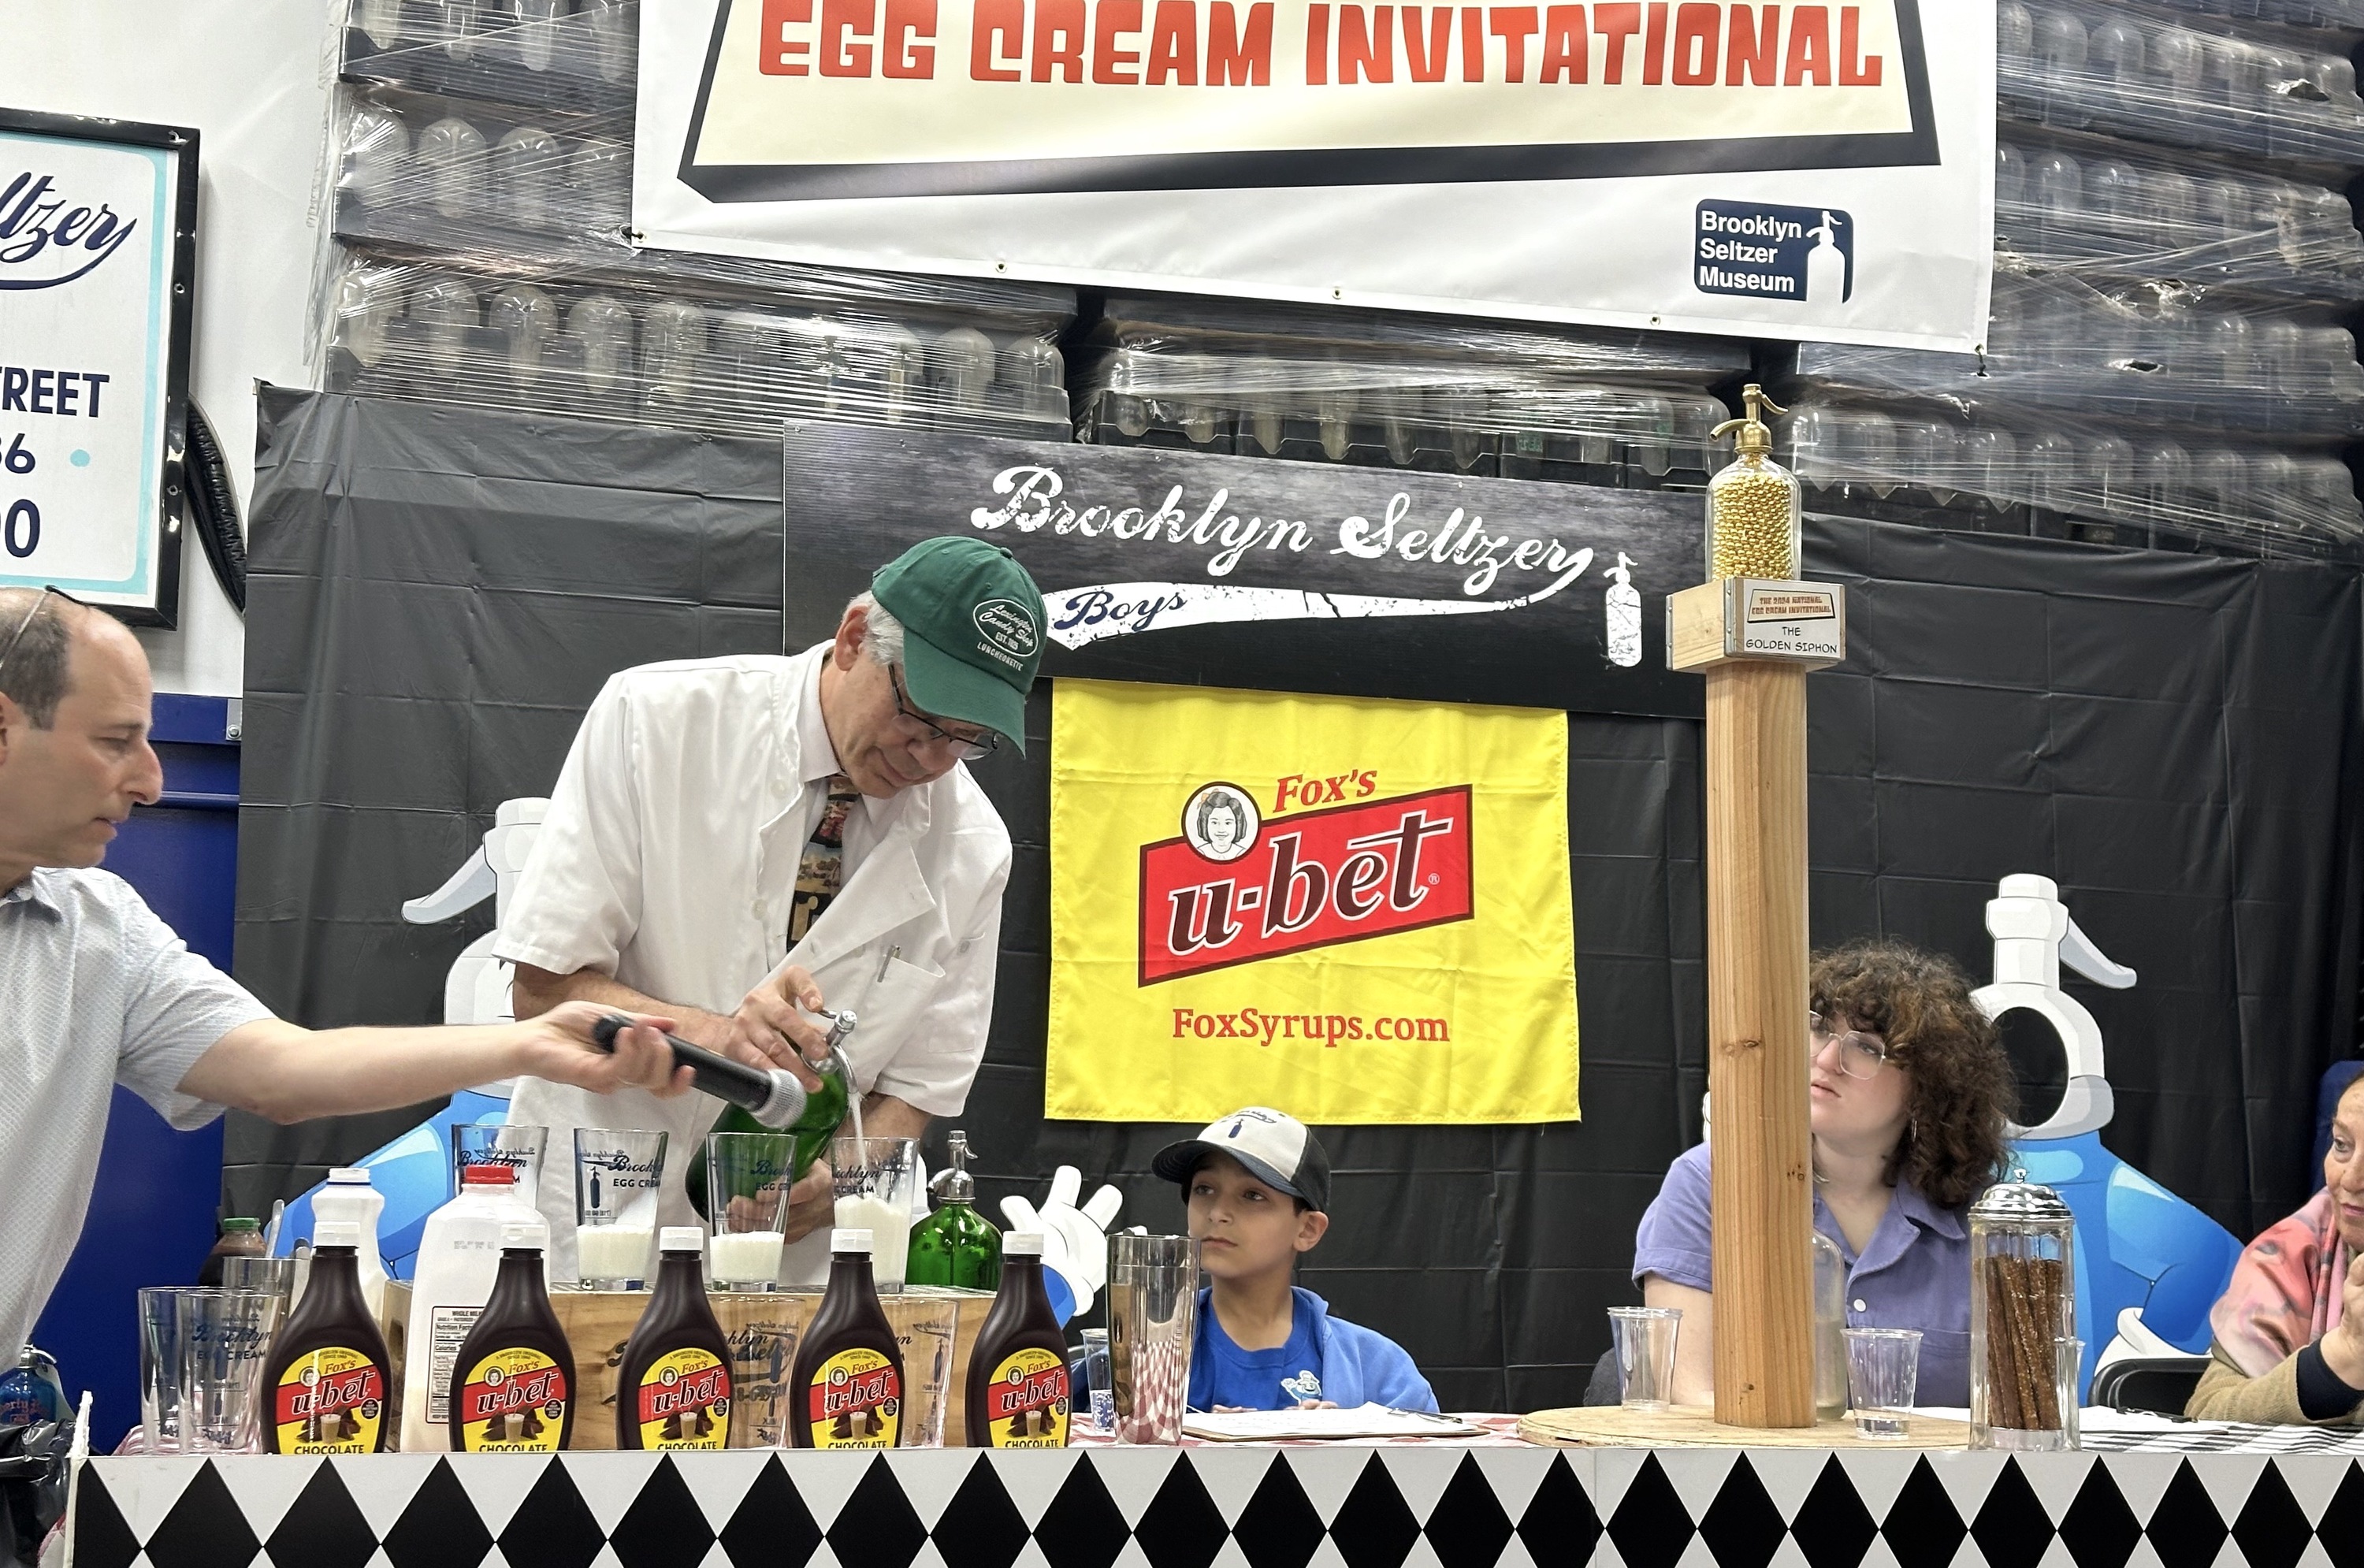 A man from Lexington Avenue Candy Shop makes an egg cream.